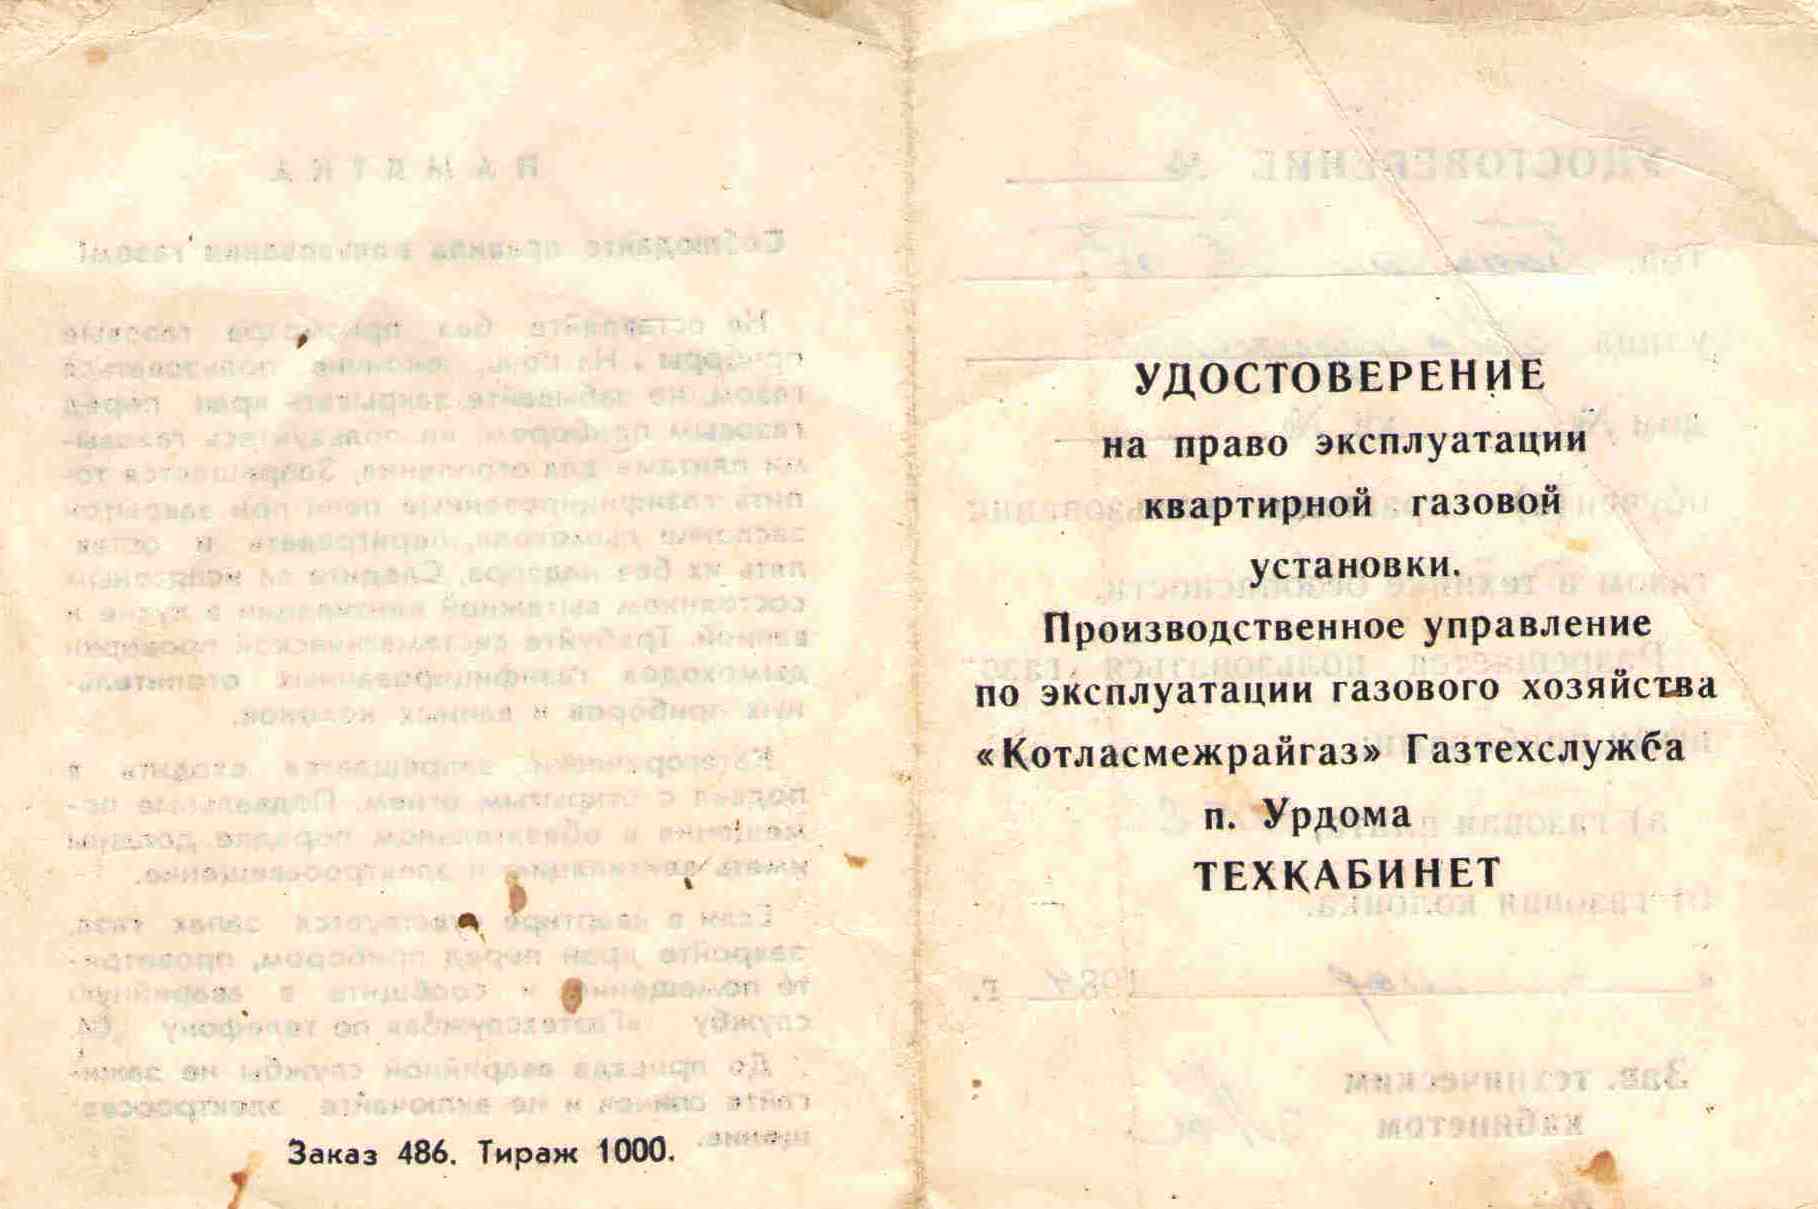 103. Удостоверение на эксплуатацию, газовой плитой, Барыкин ПП, 1984